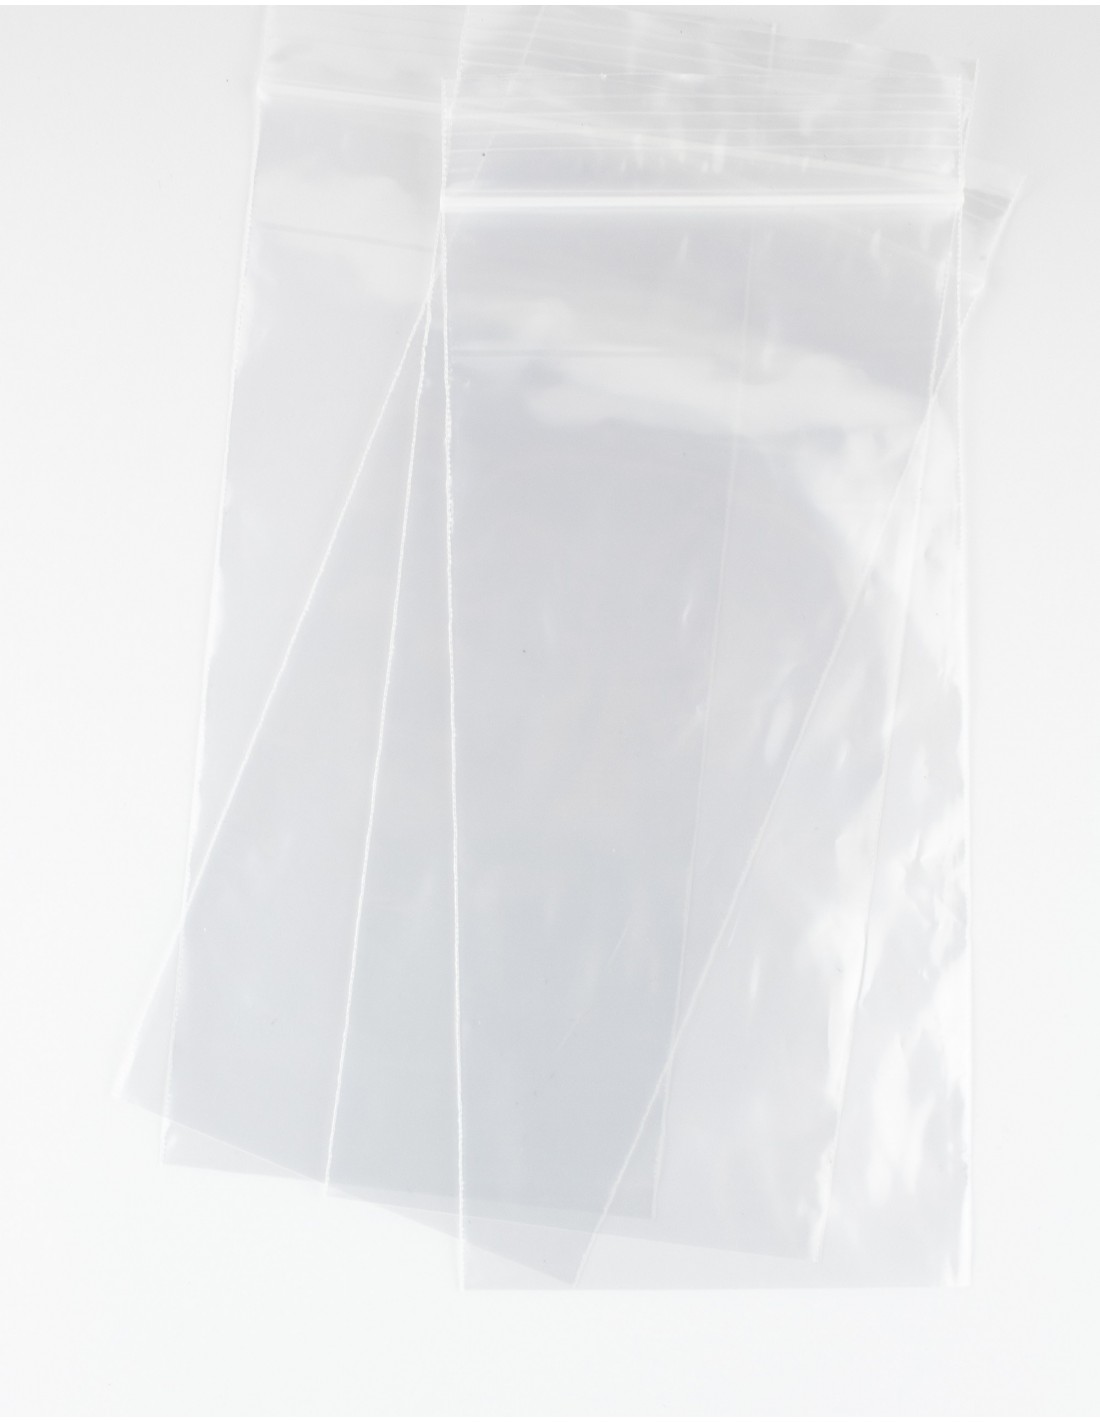 Bolsas 8.5x18 cms de polietileno transparentes, con cierre zip